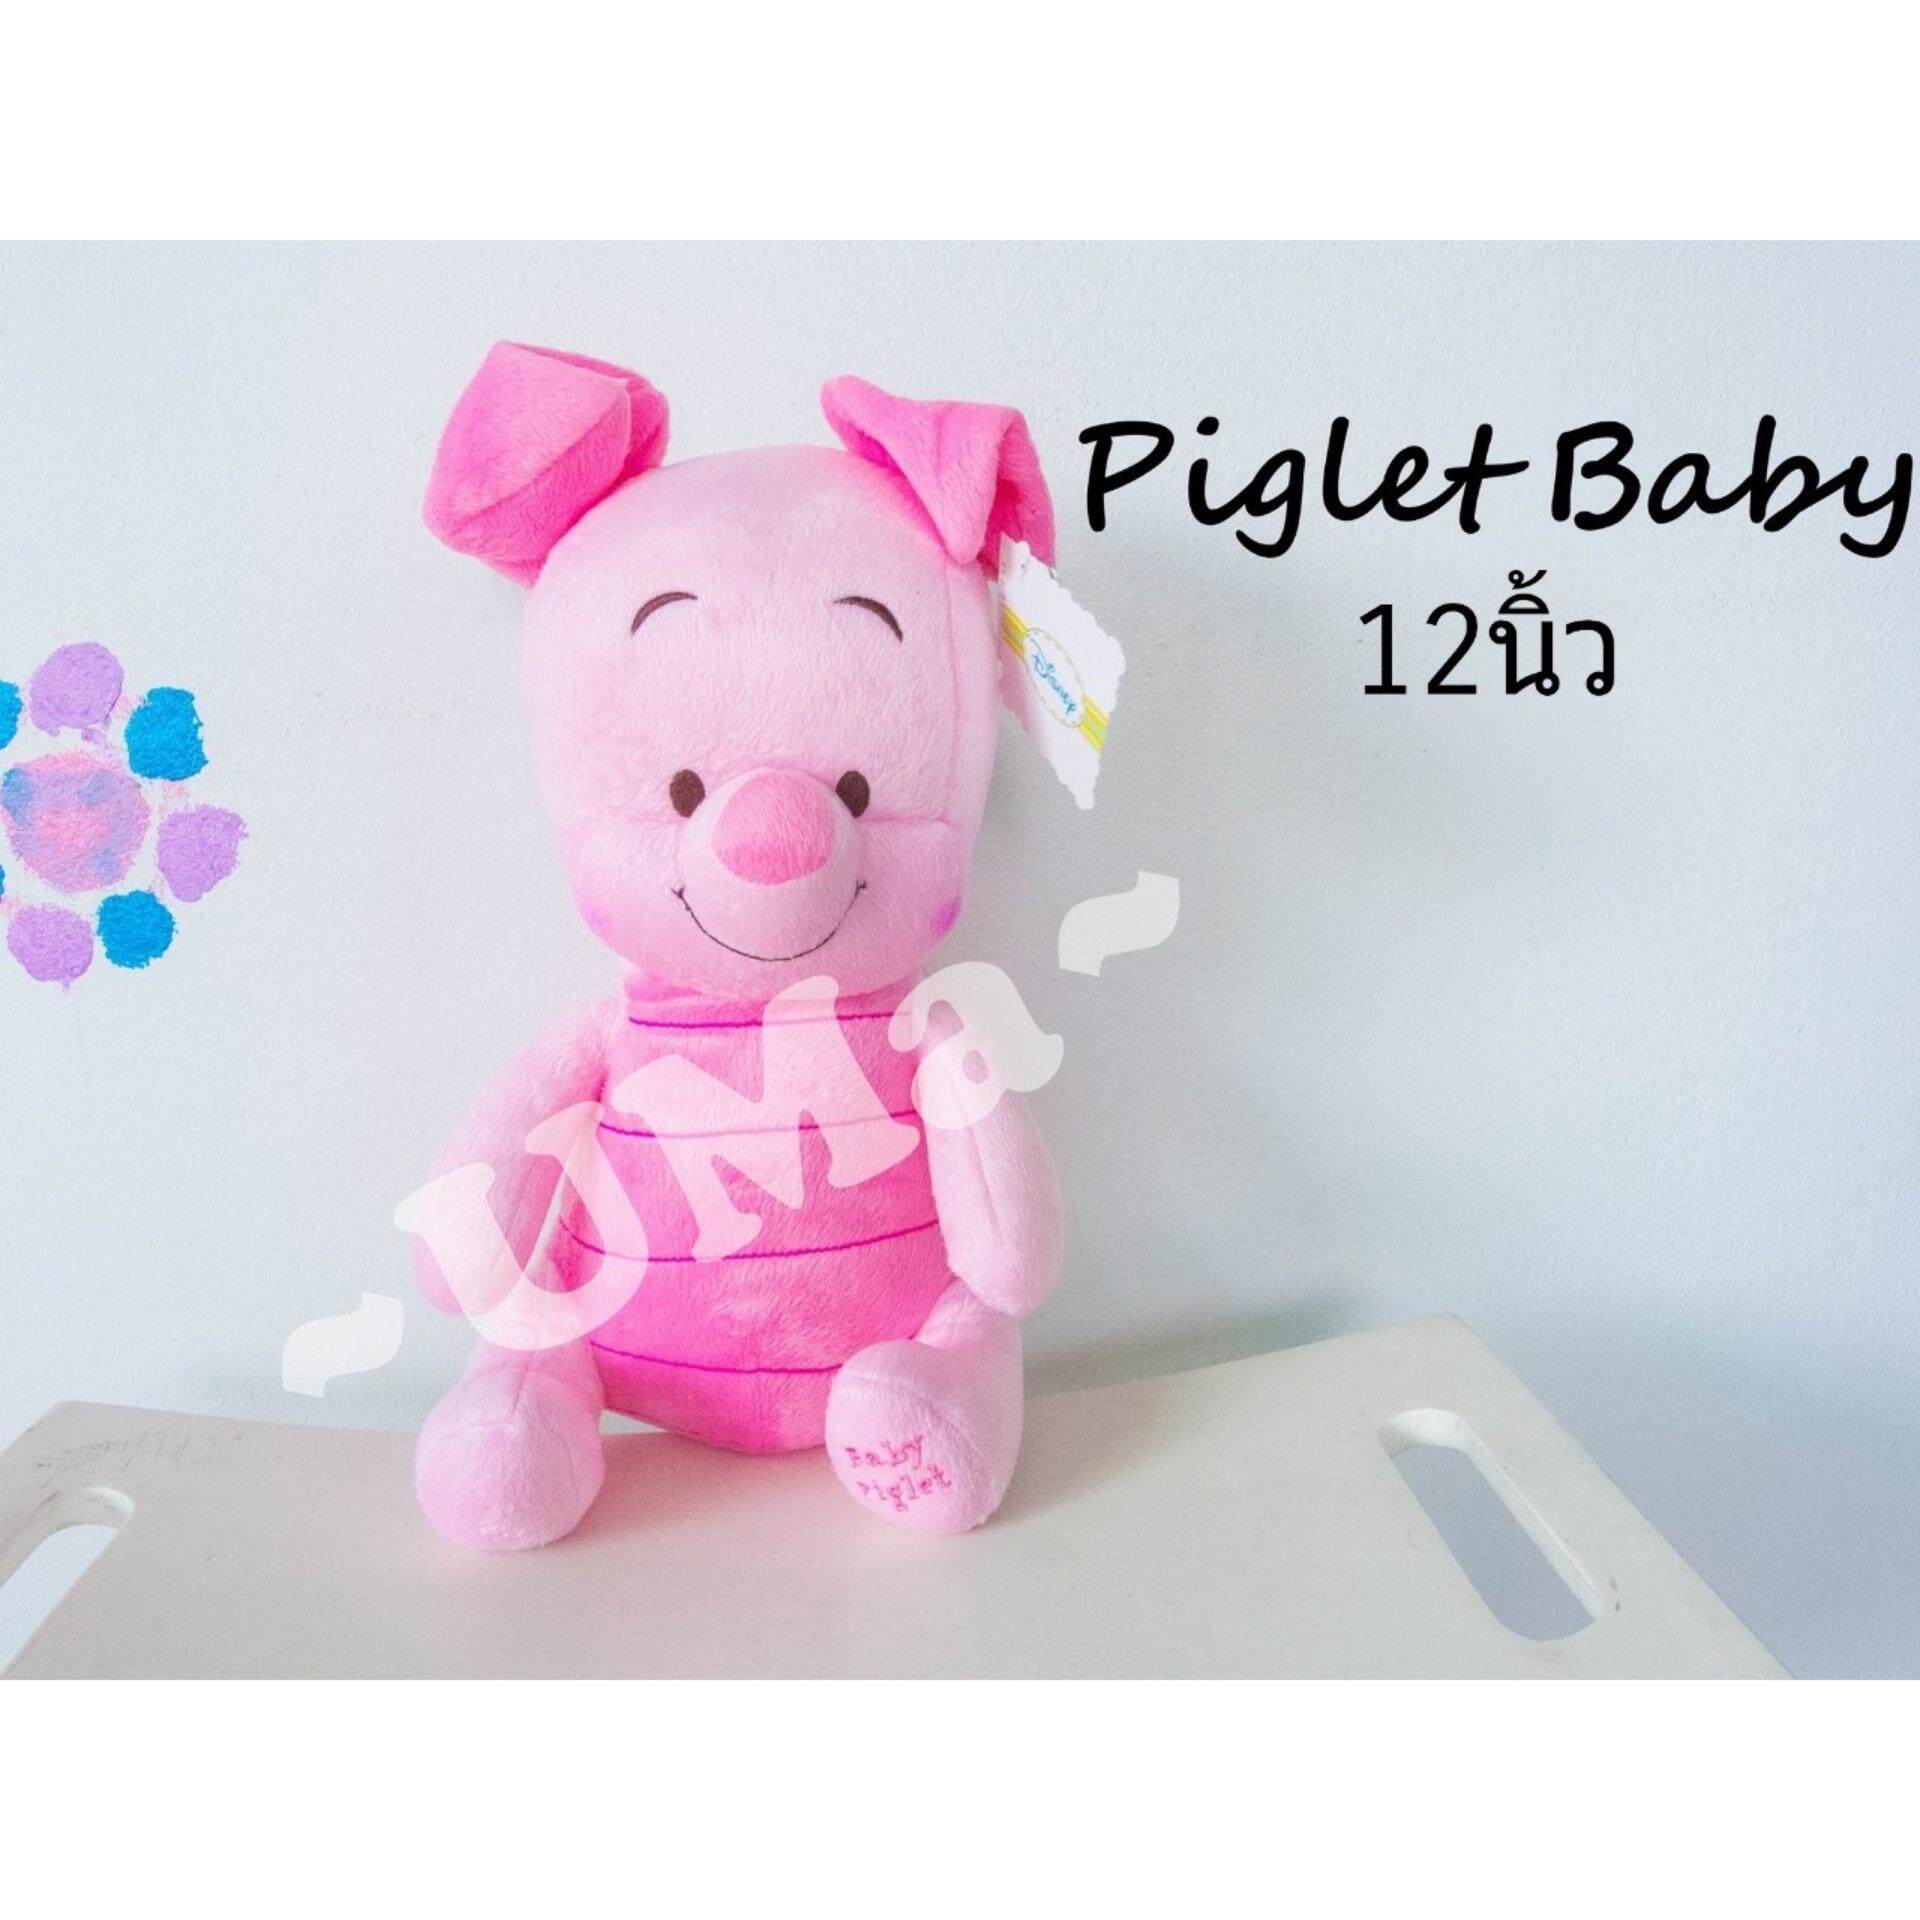 ตุ๊กตาพิกเลท Piglet Baby ไซต์ 6.5นิ้ว, 8นิ้ว, 10นิ้ว, 12นิ้ว, 15นิ้ว, 20นิ้ว, 24นิ้ว